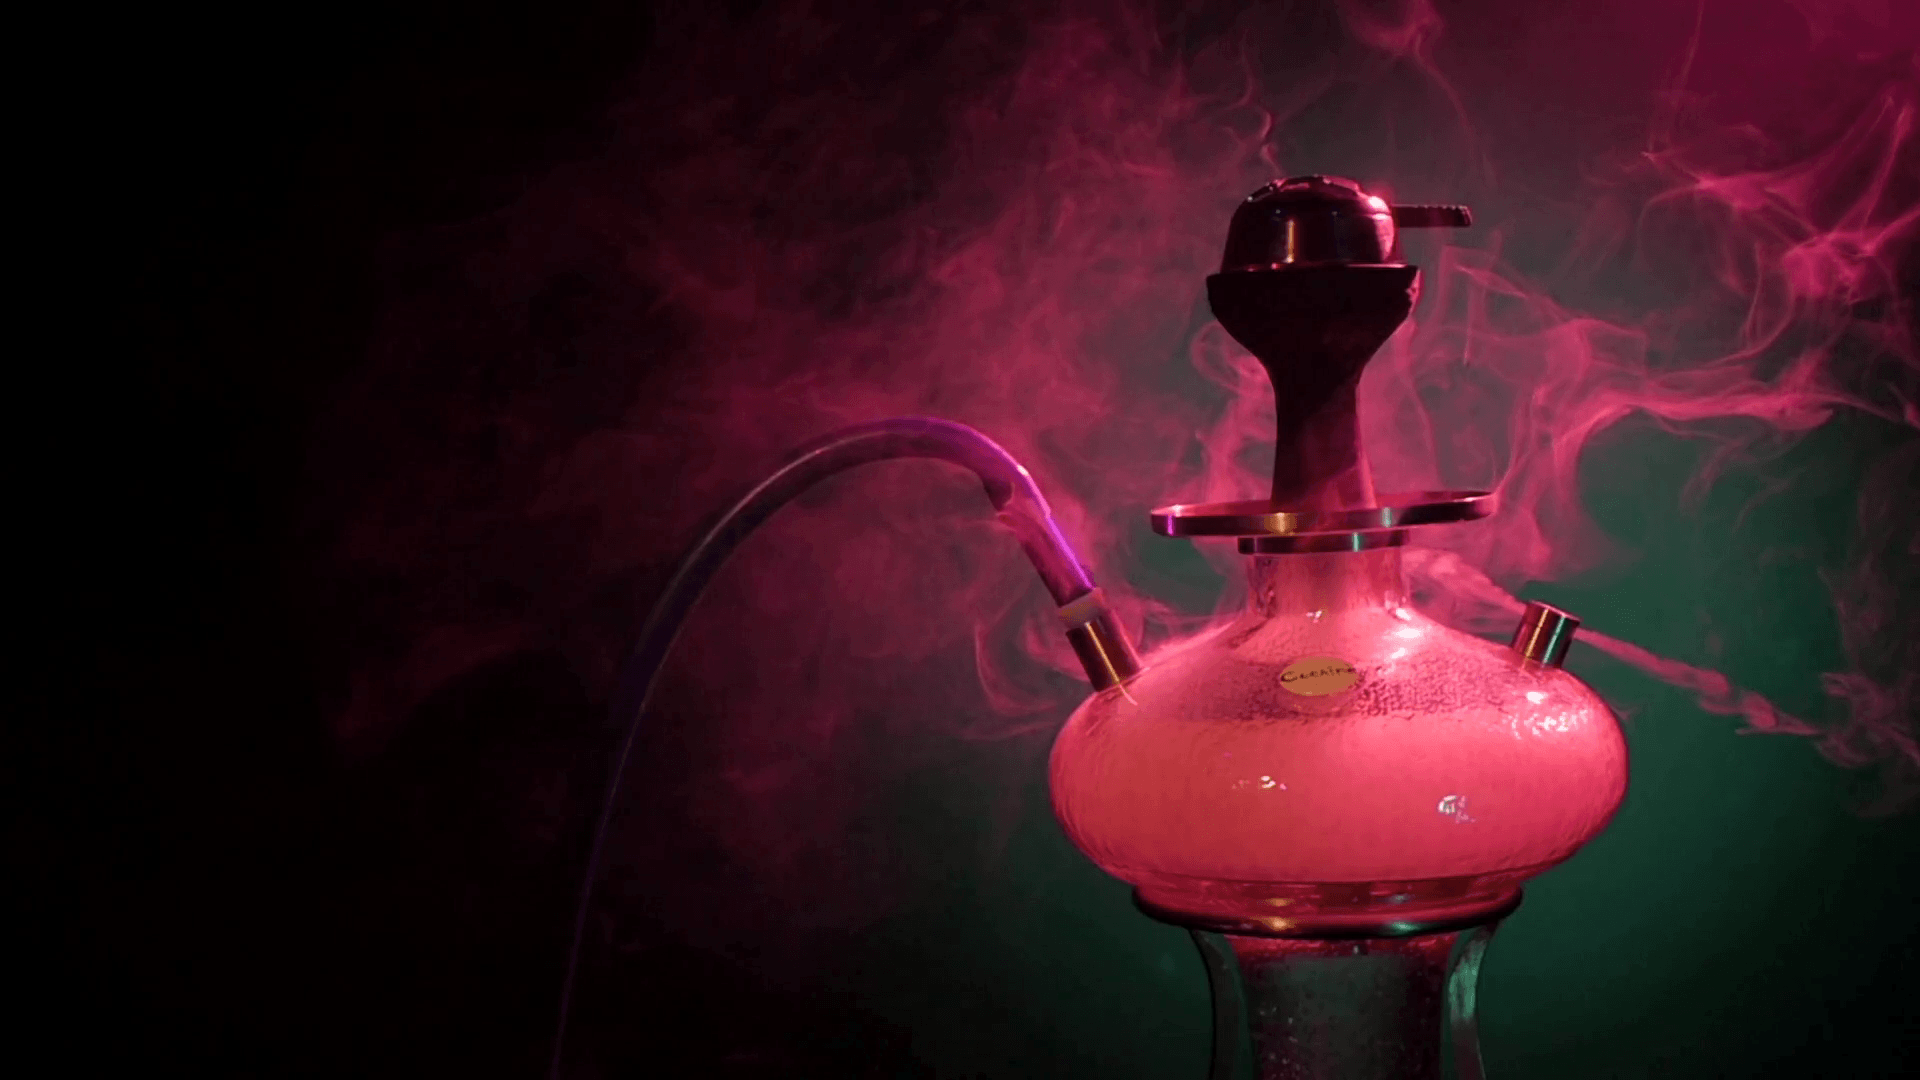 purple hookah smoke on a black background. slow motion Stock Video